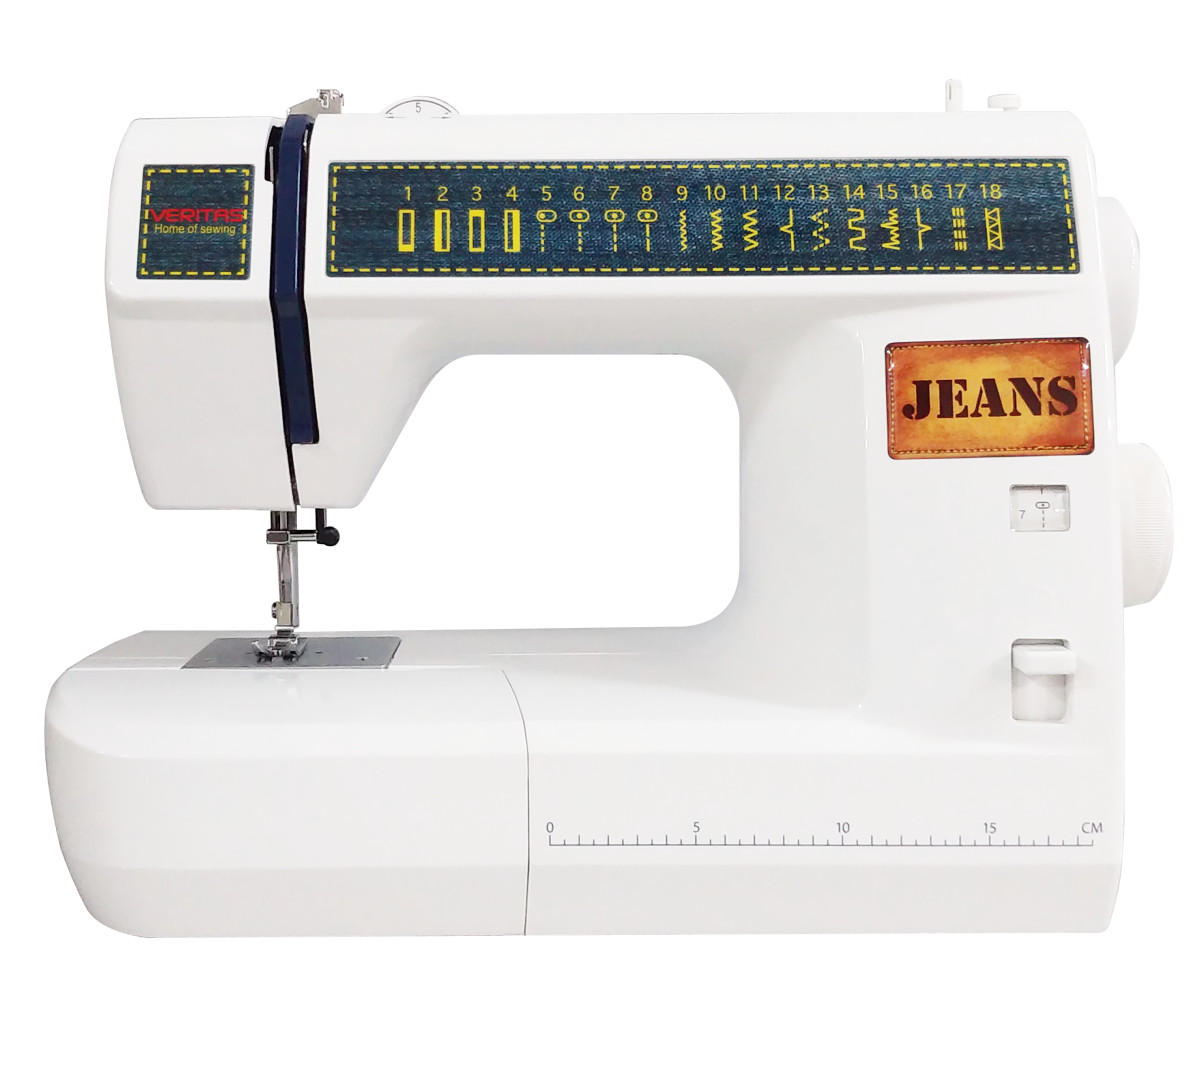 Šijací stroj Veritas 1339 JSA 18 Jeans